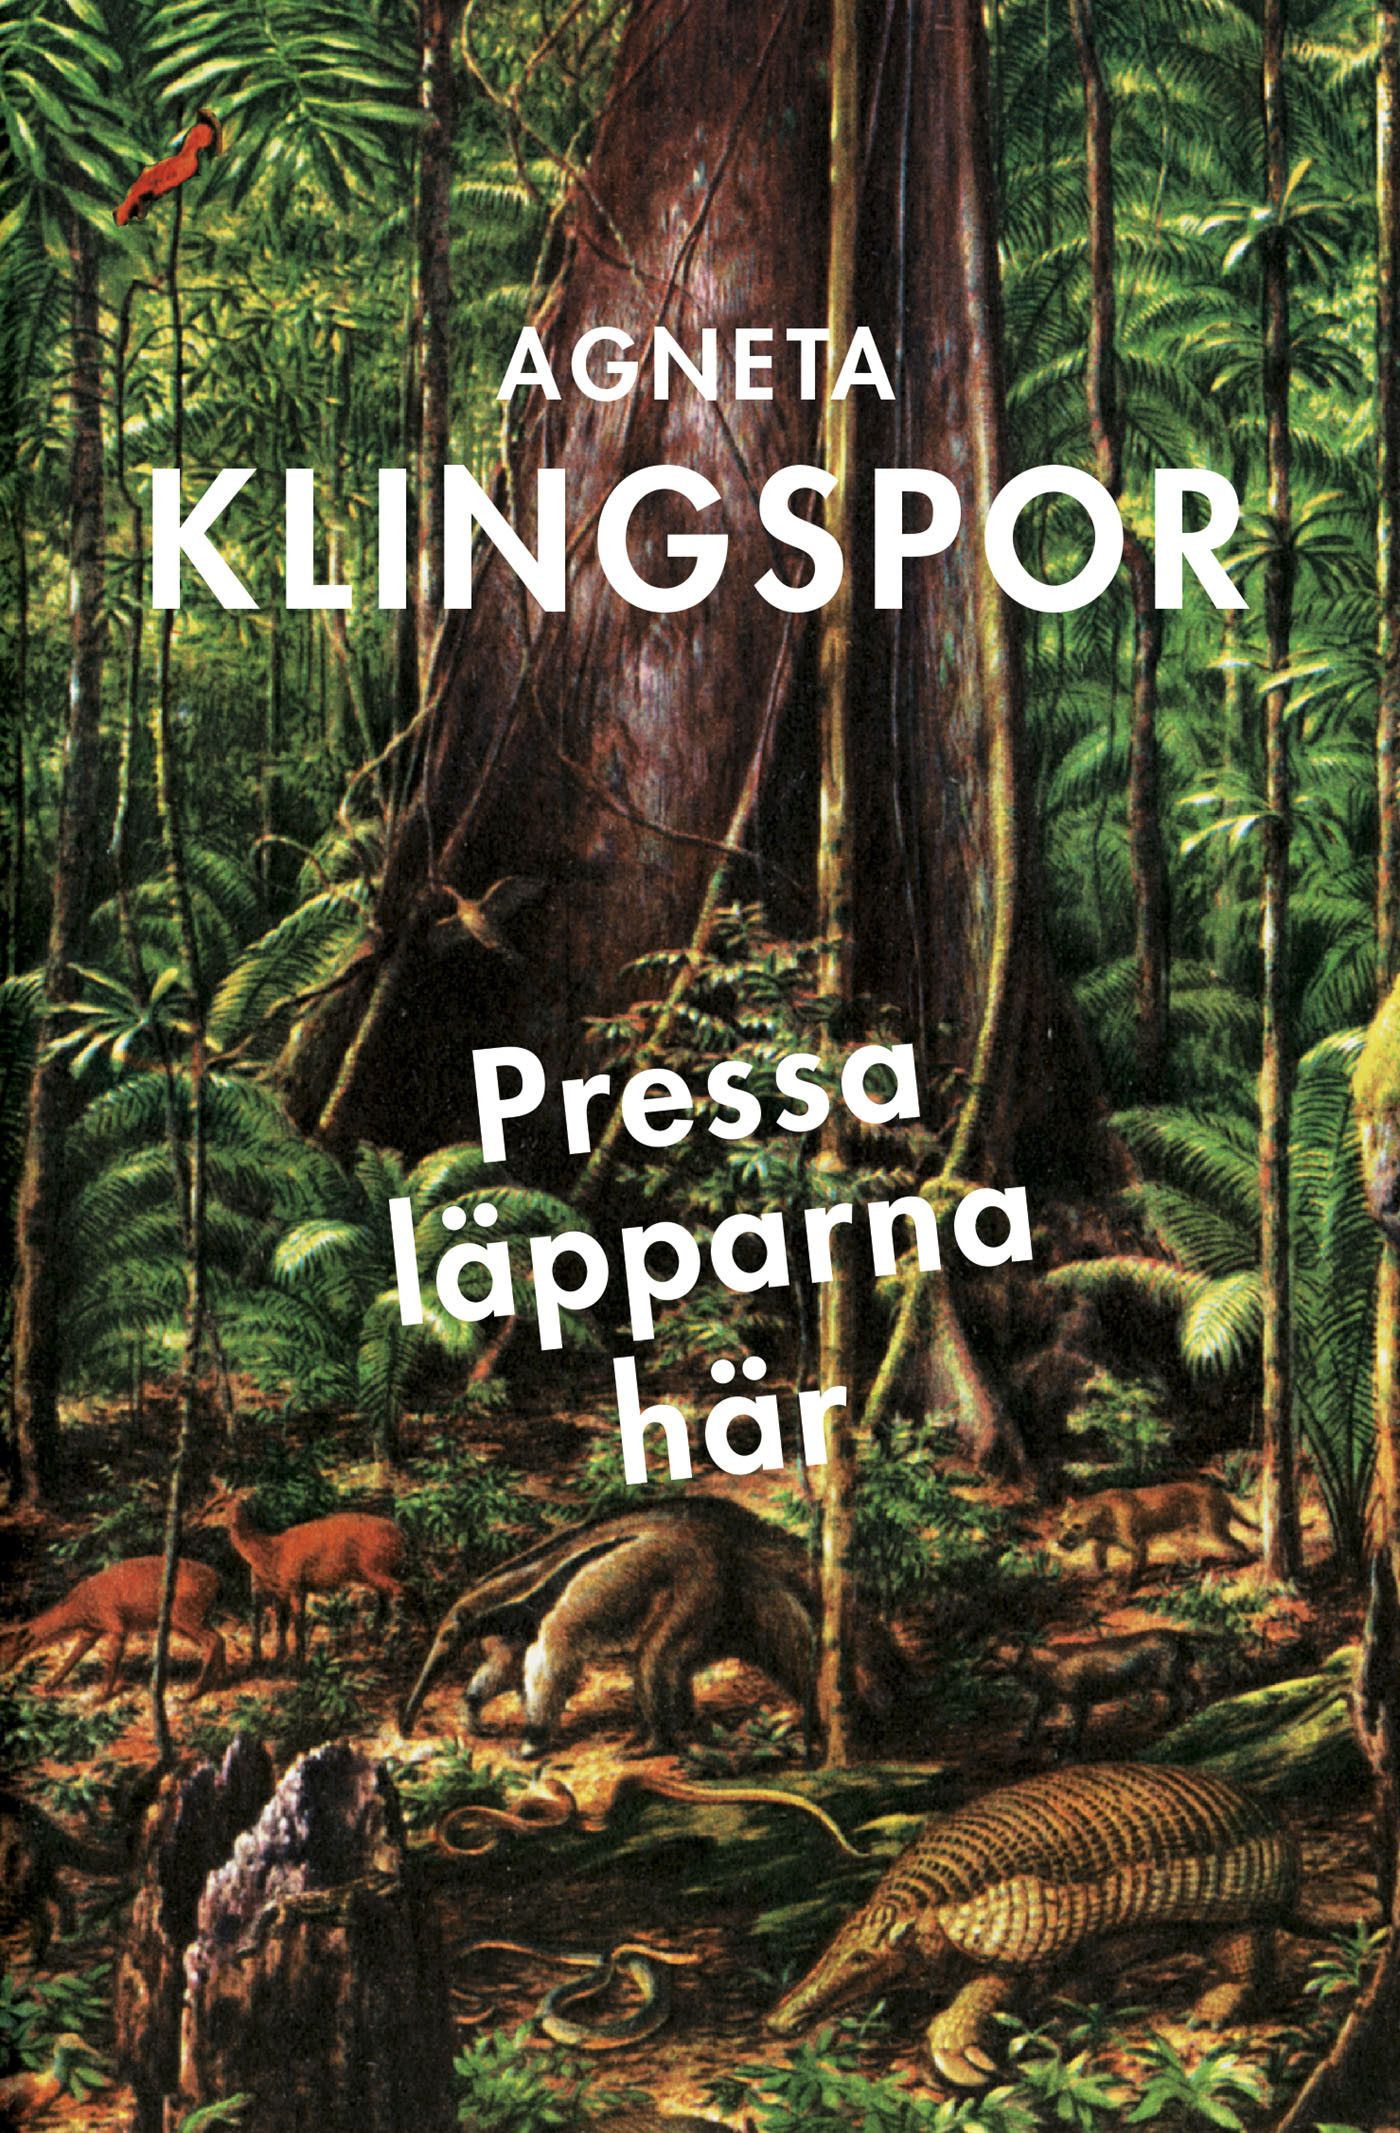 Pressa läpparna här, e-bog af Agneta Klingspor